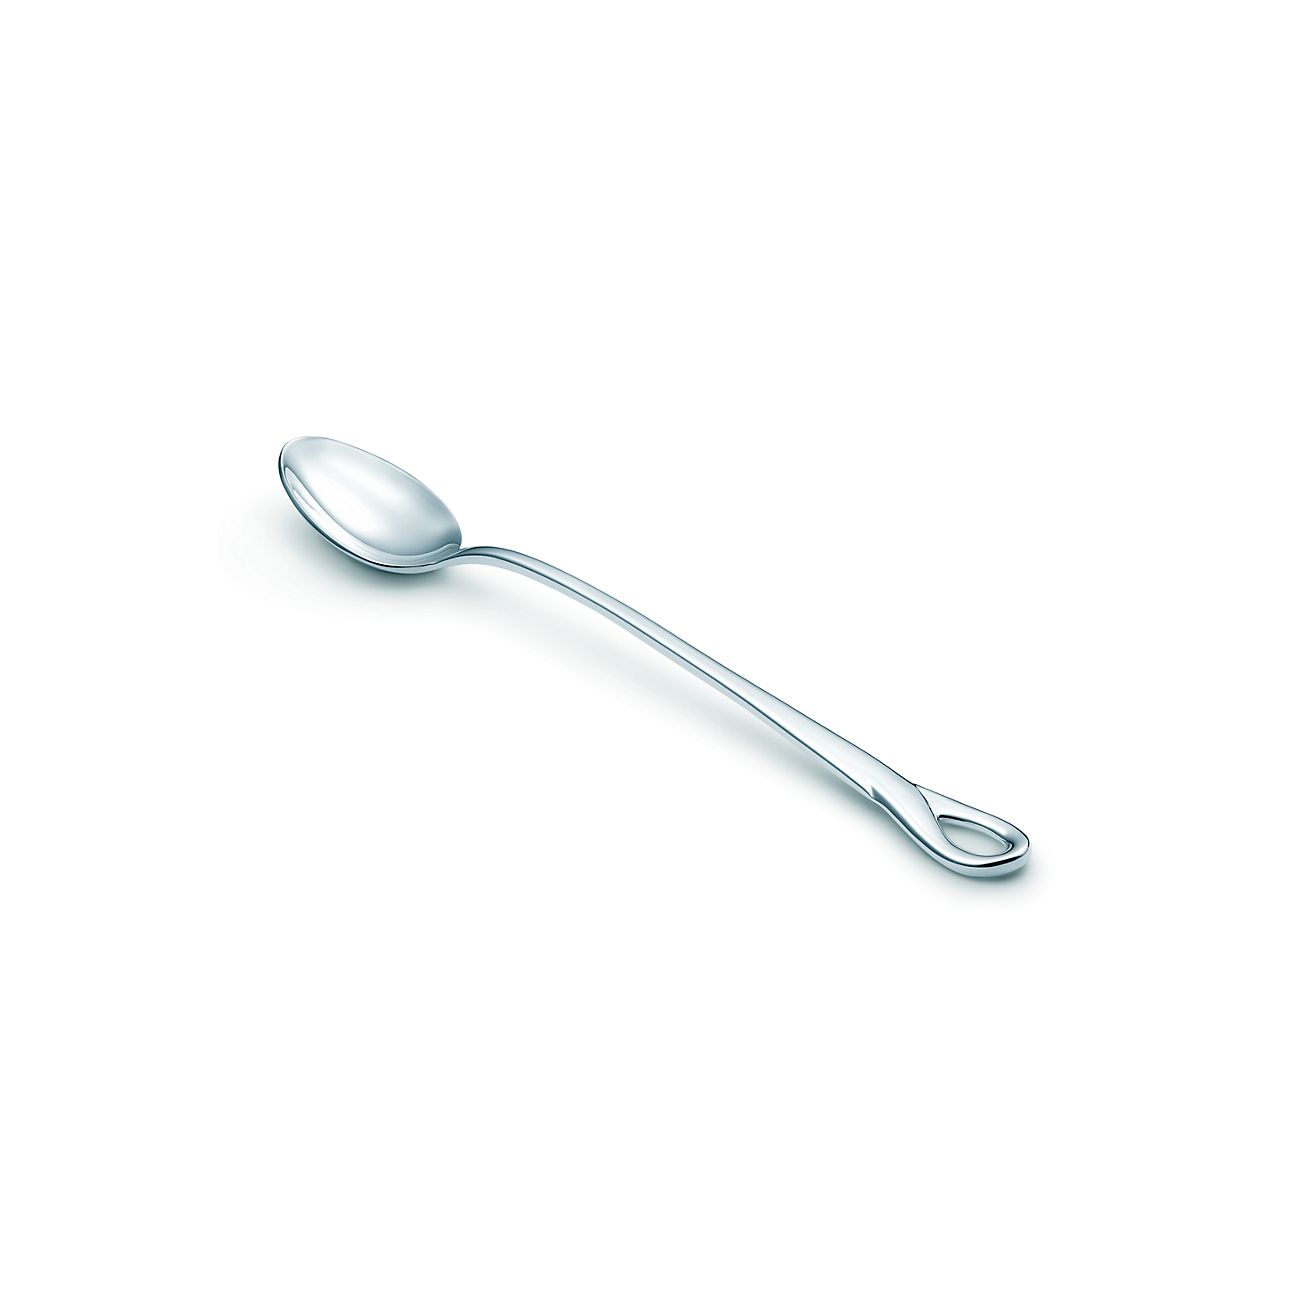 tiffany & co baby spoon